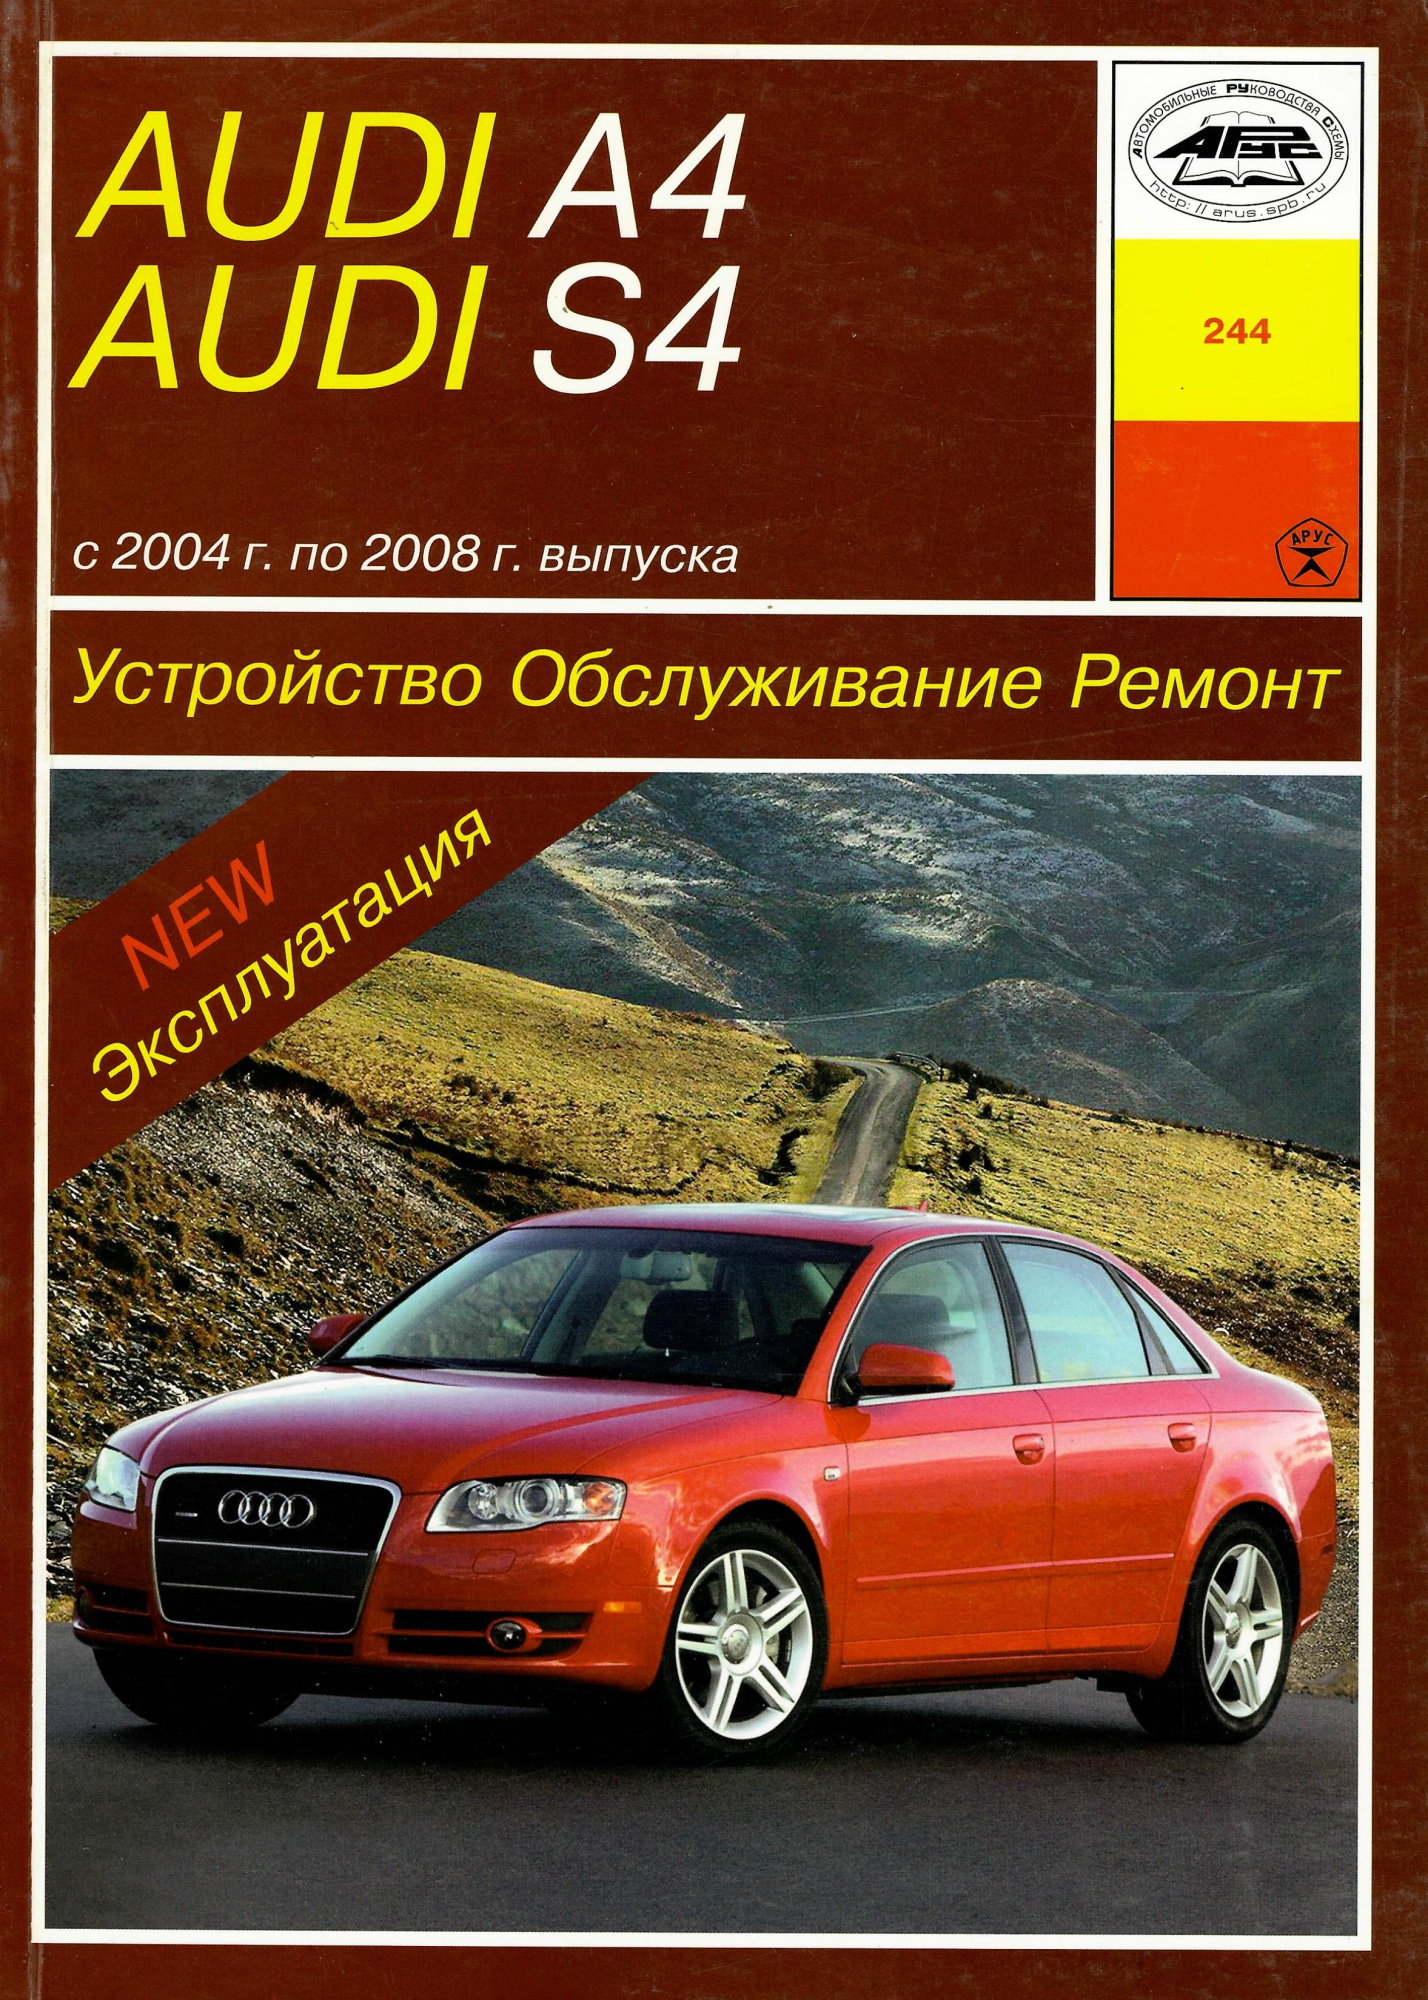 Audi A4, S4 с 2004-2008. Книга руководство по ремонту и эксплуатации. Арус